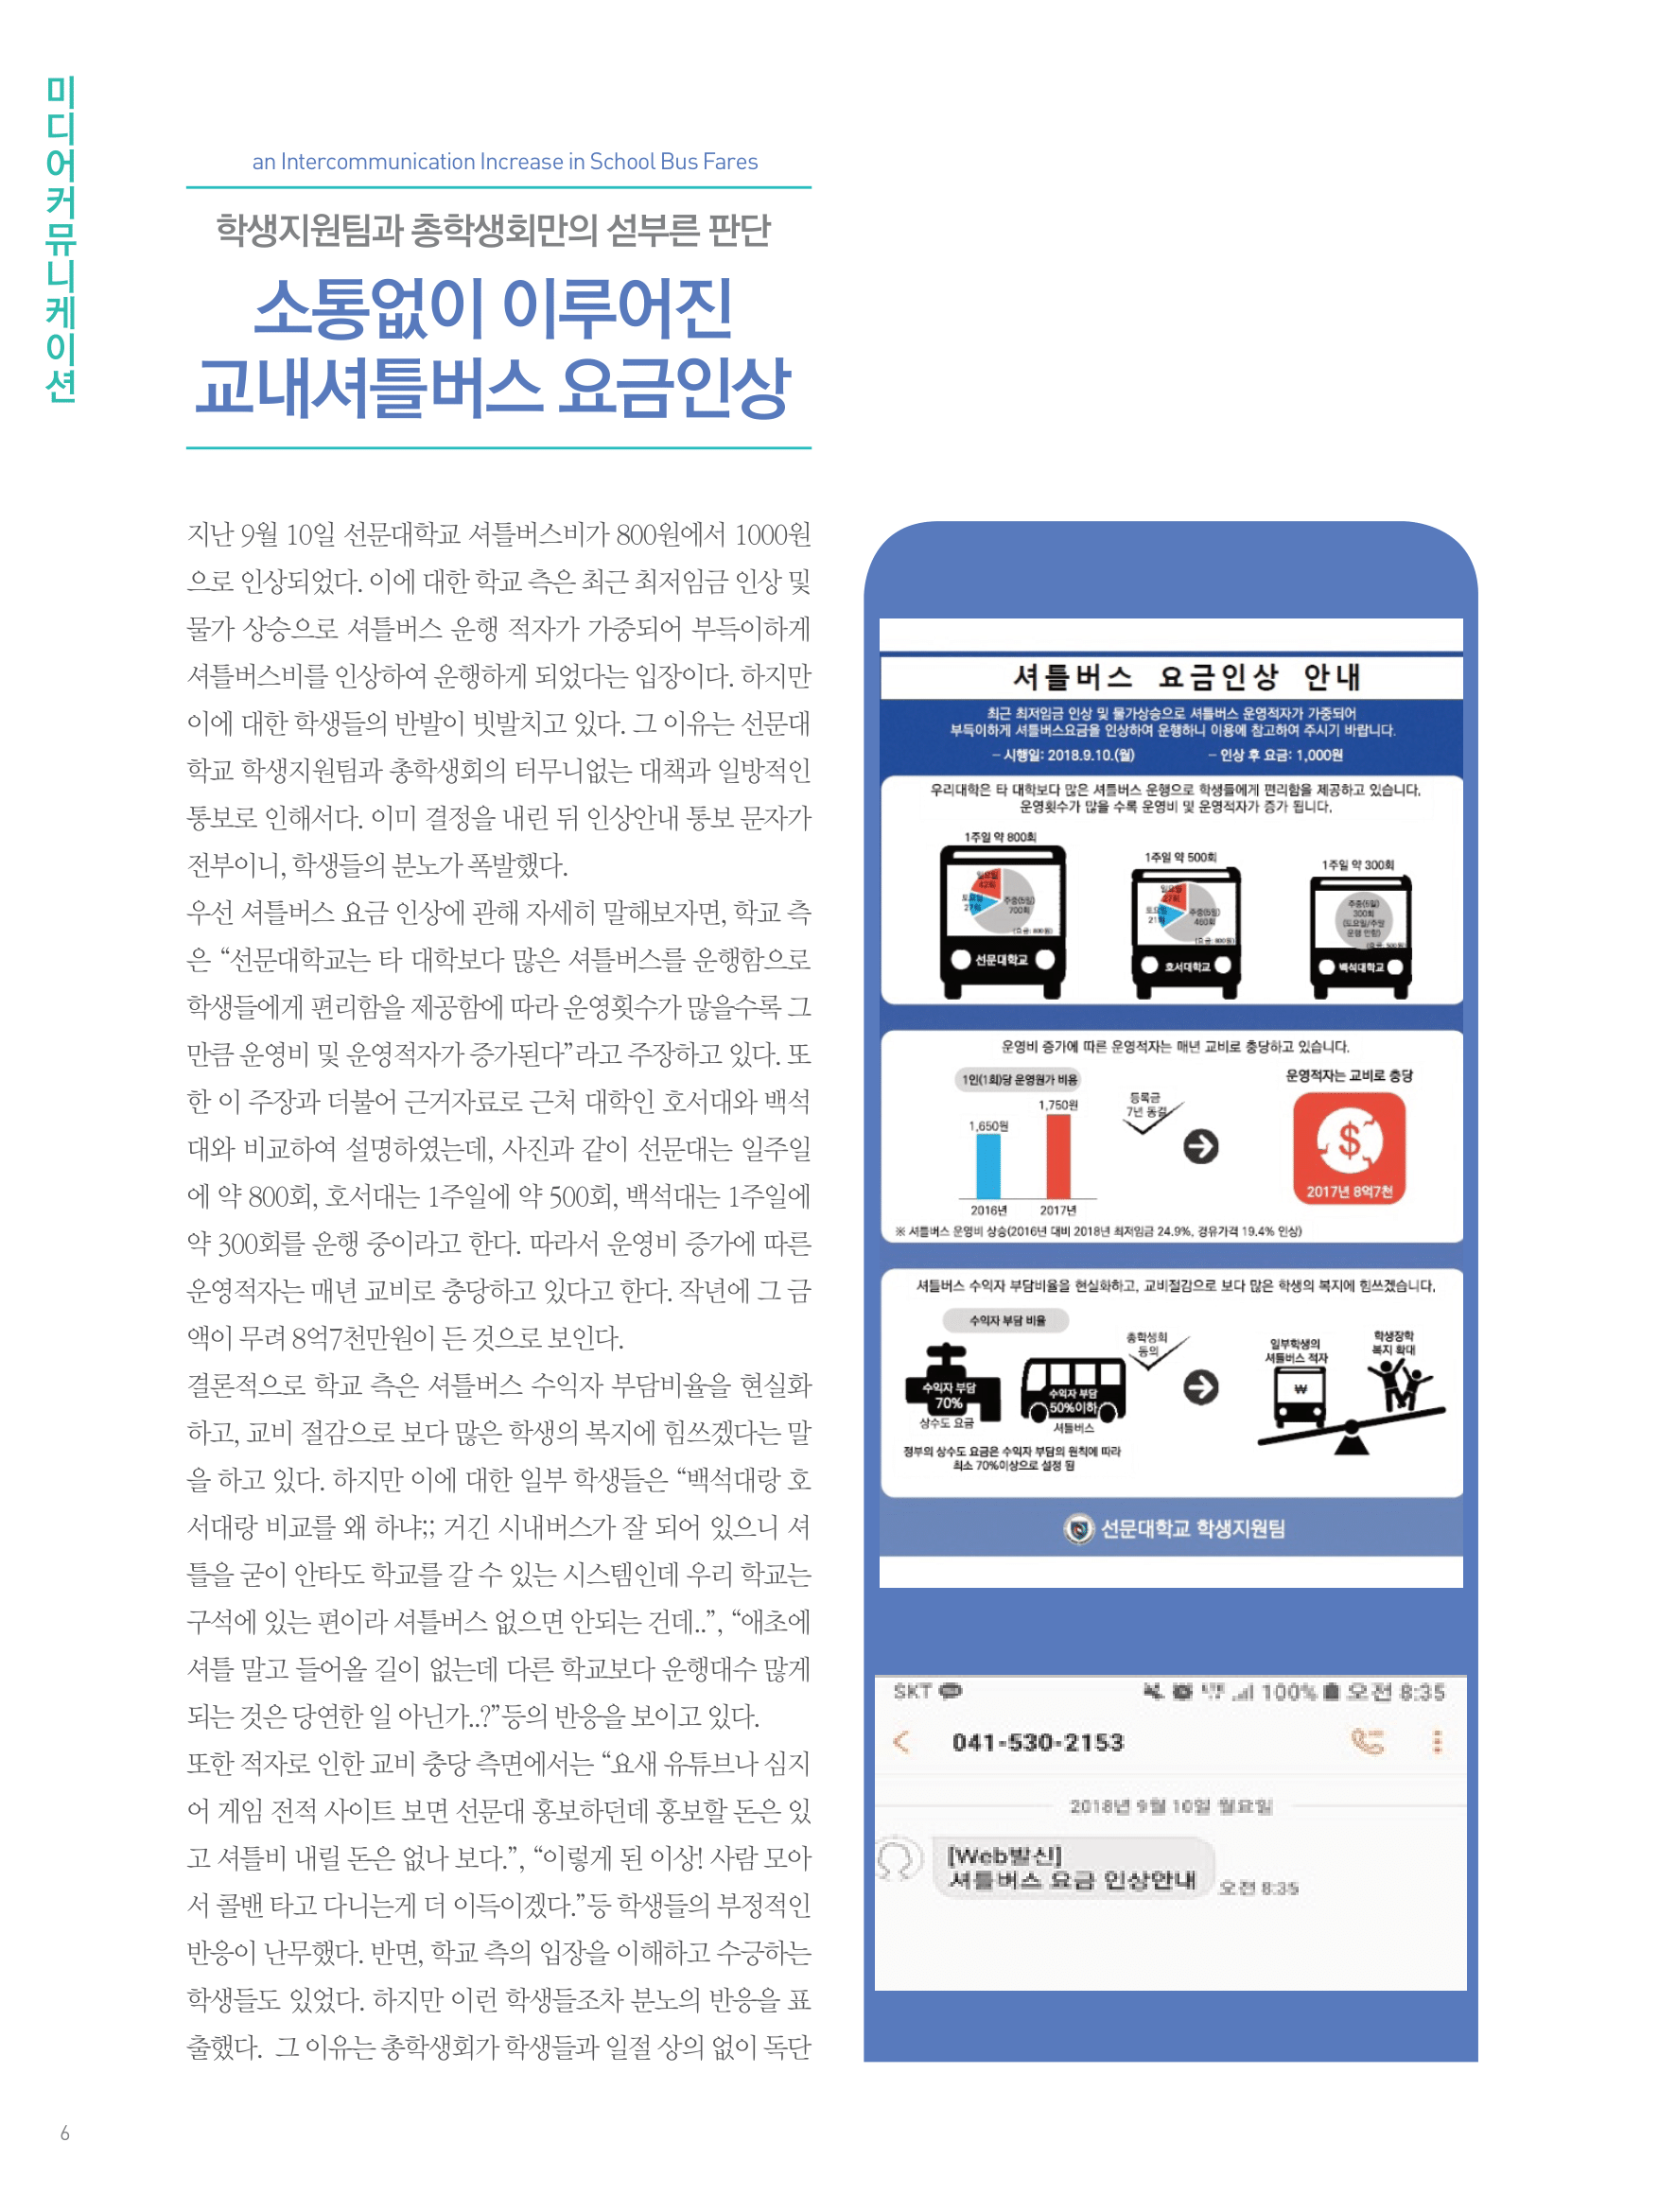 뜻새김 신문 72호 6